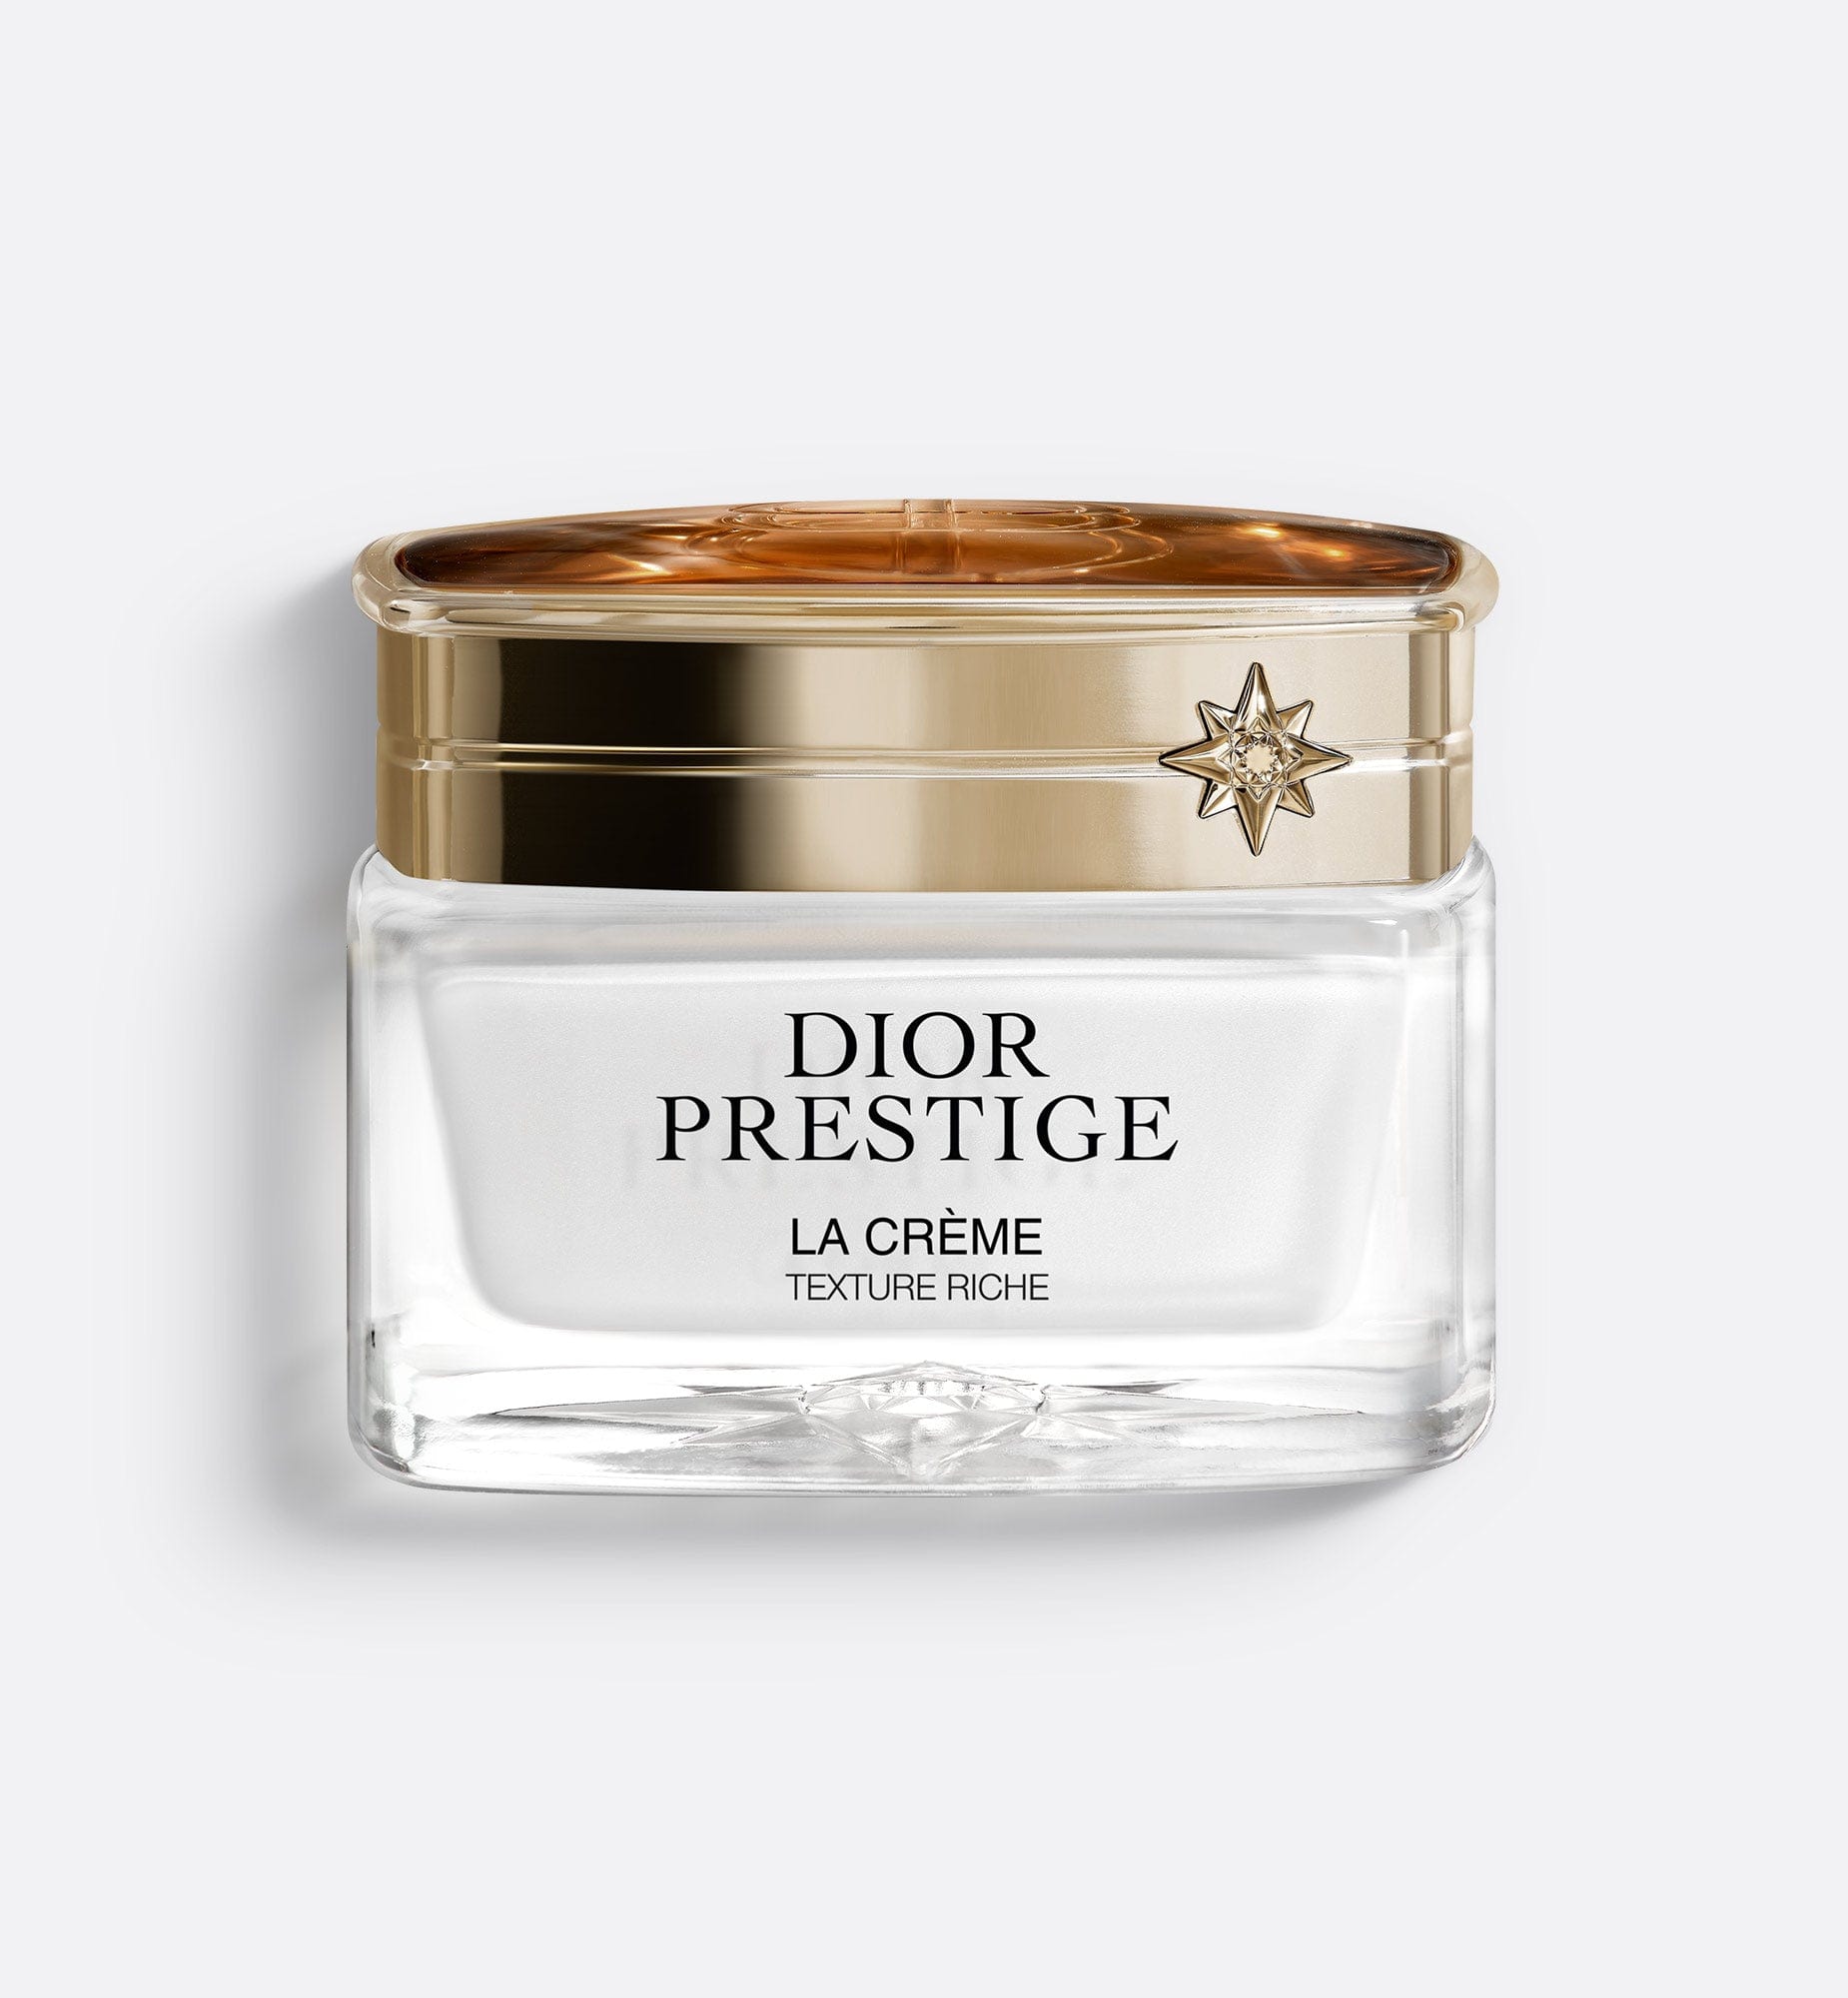 Dior Prestige La Crème Texture Riche | Anti-Aging Intensive Repairing Creme - Dry to Very Dry Skin